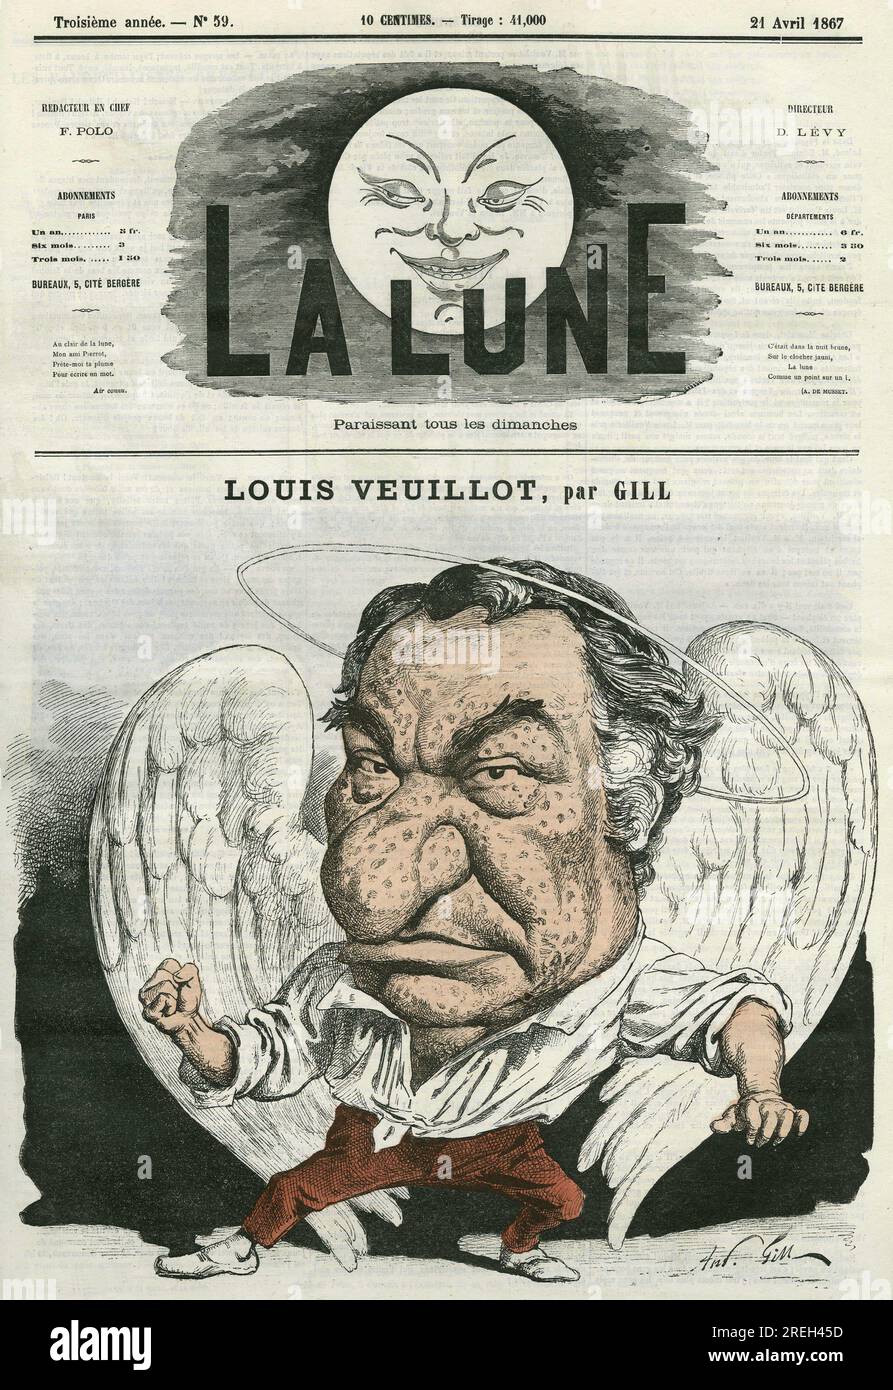 Portrait de Louis Veuillot (1813-1883), journaliste et homme de lettres francais. Caricature par Gill, in "La Lune", le 21 avril 1867. Stock Photo